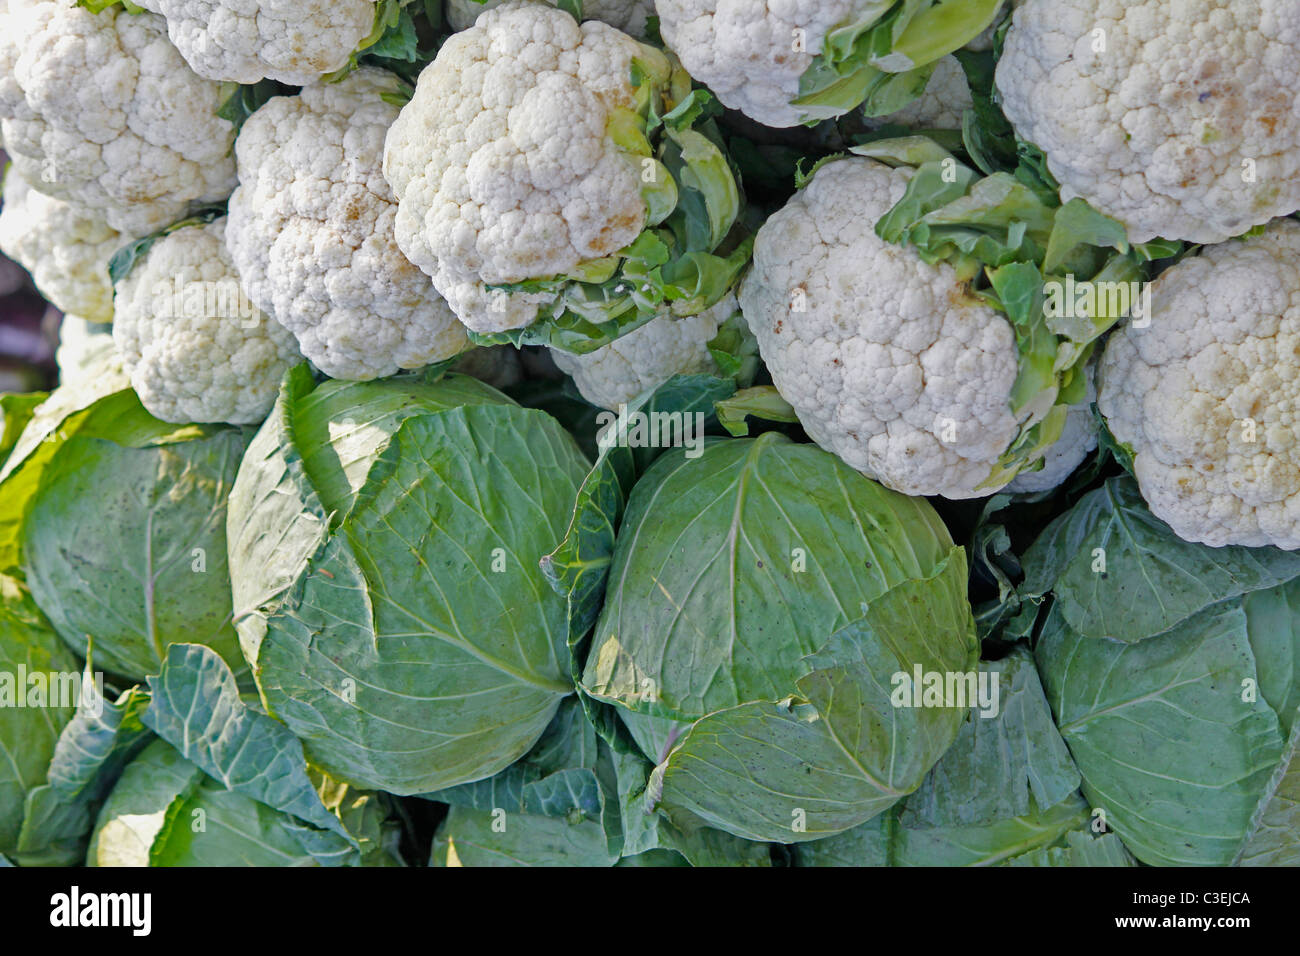 Cabbage, Brassica oleracea var capitata & Cauliflower, Brassica oleracea var botrytis, India Stock Photo